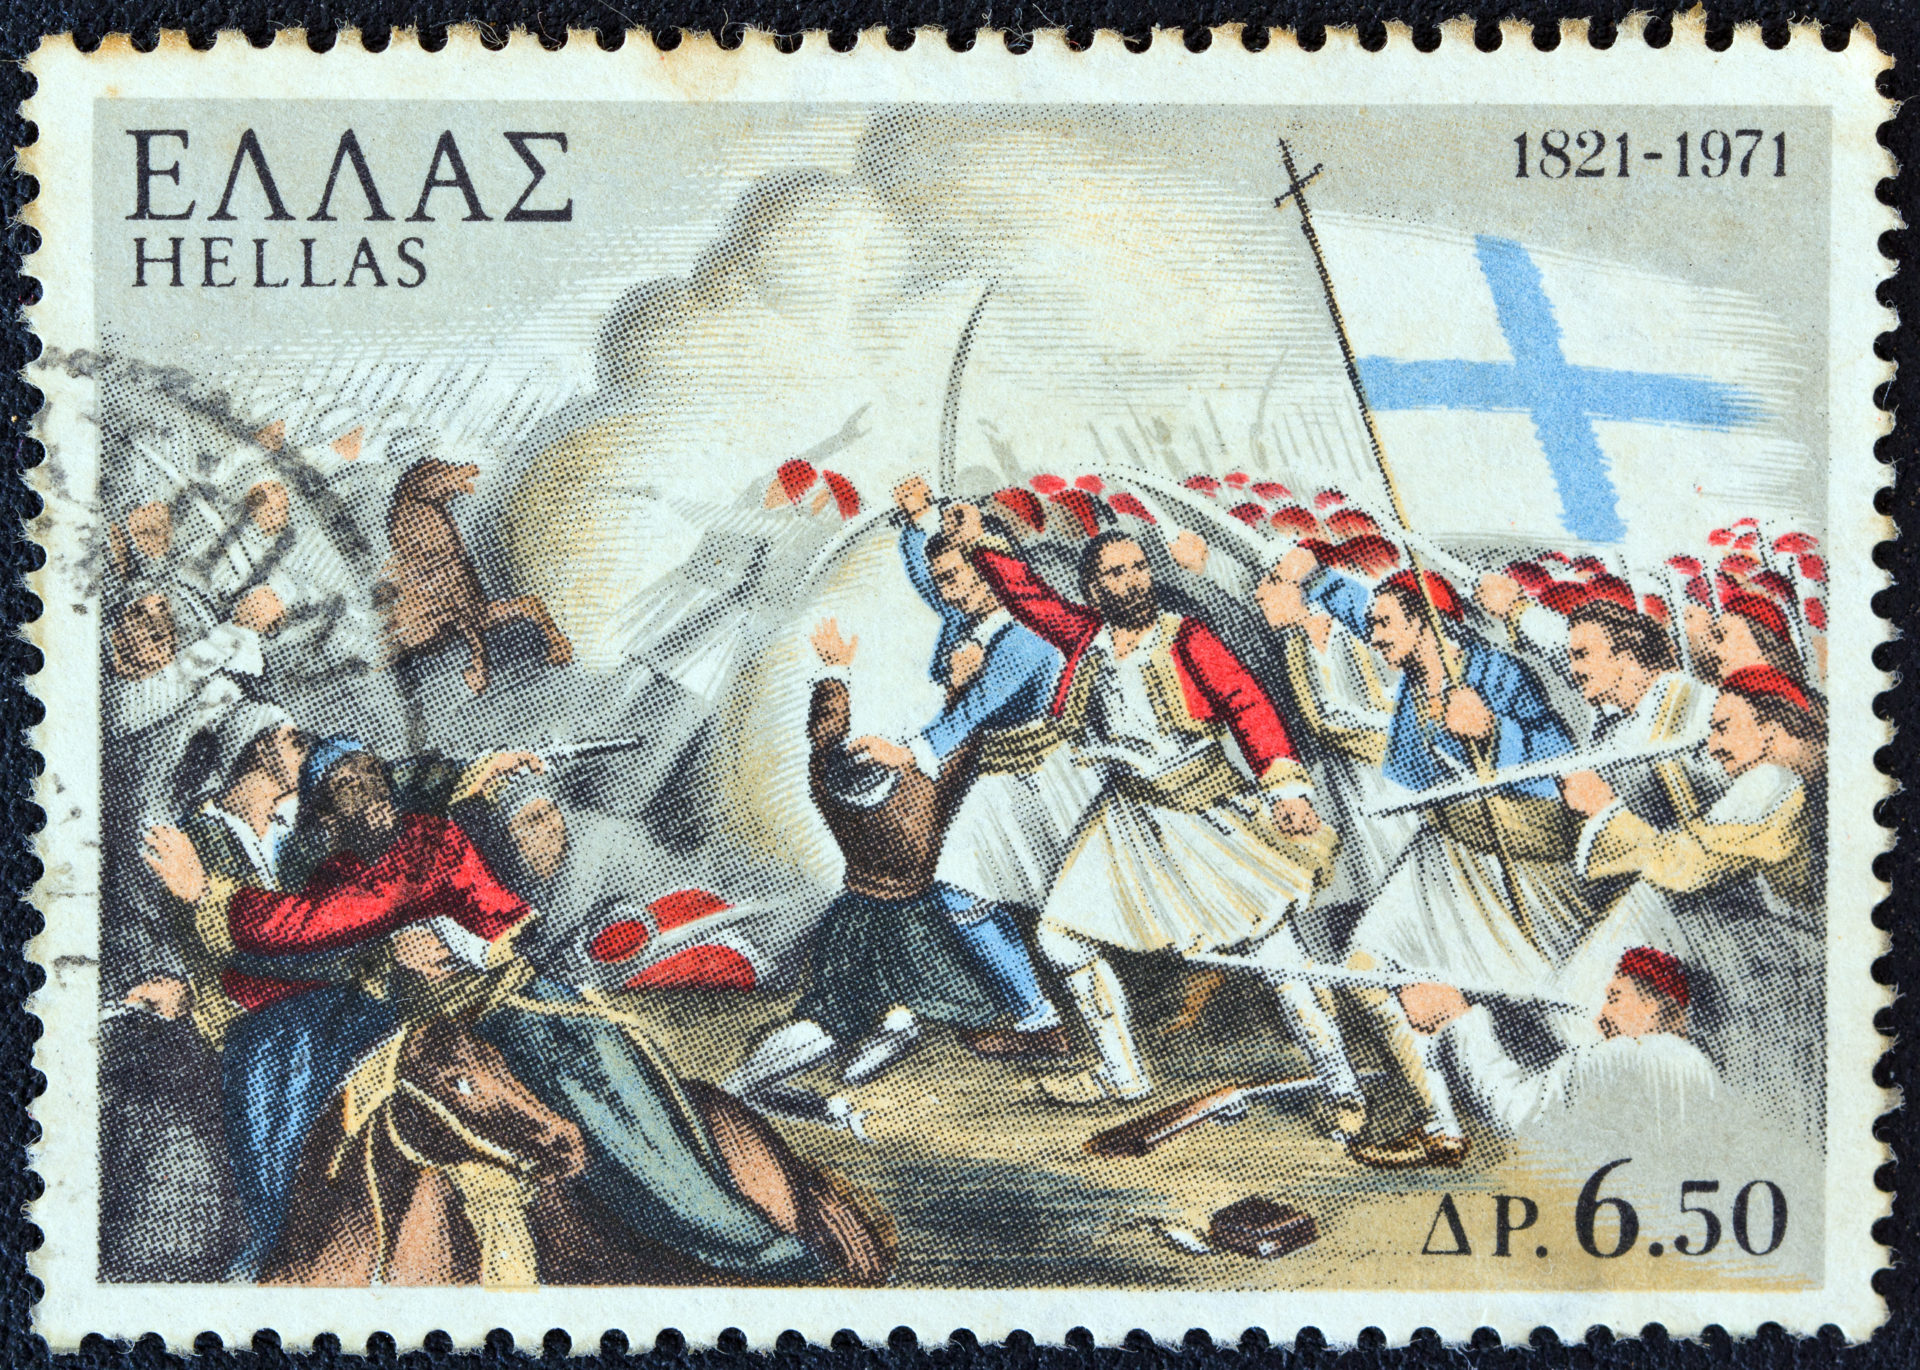 25 mars 2021 : le bicentenaire de la Révolution grecque